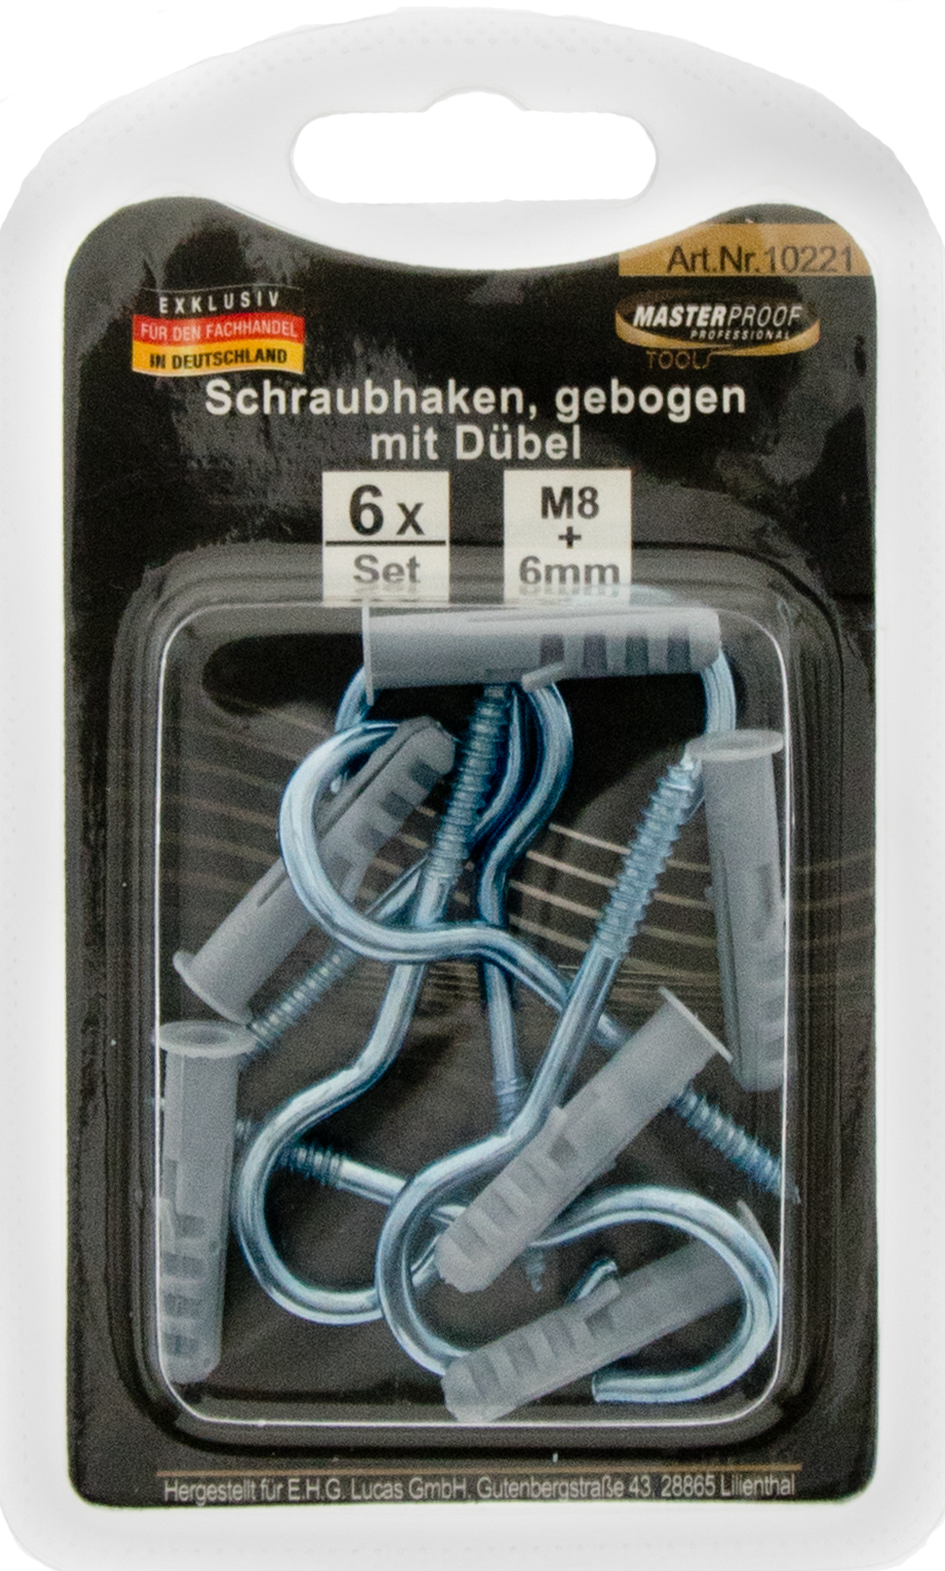 Picture of Schraubhaken M8, gebogen mit Dübel 6mm